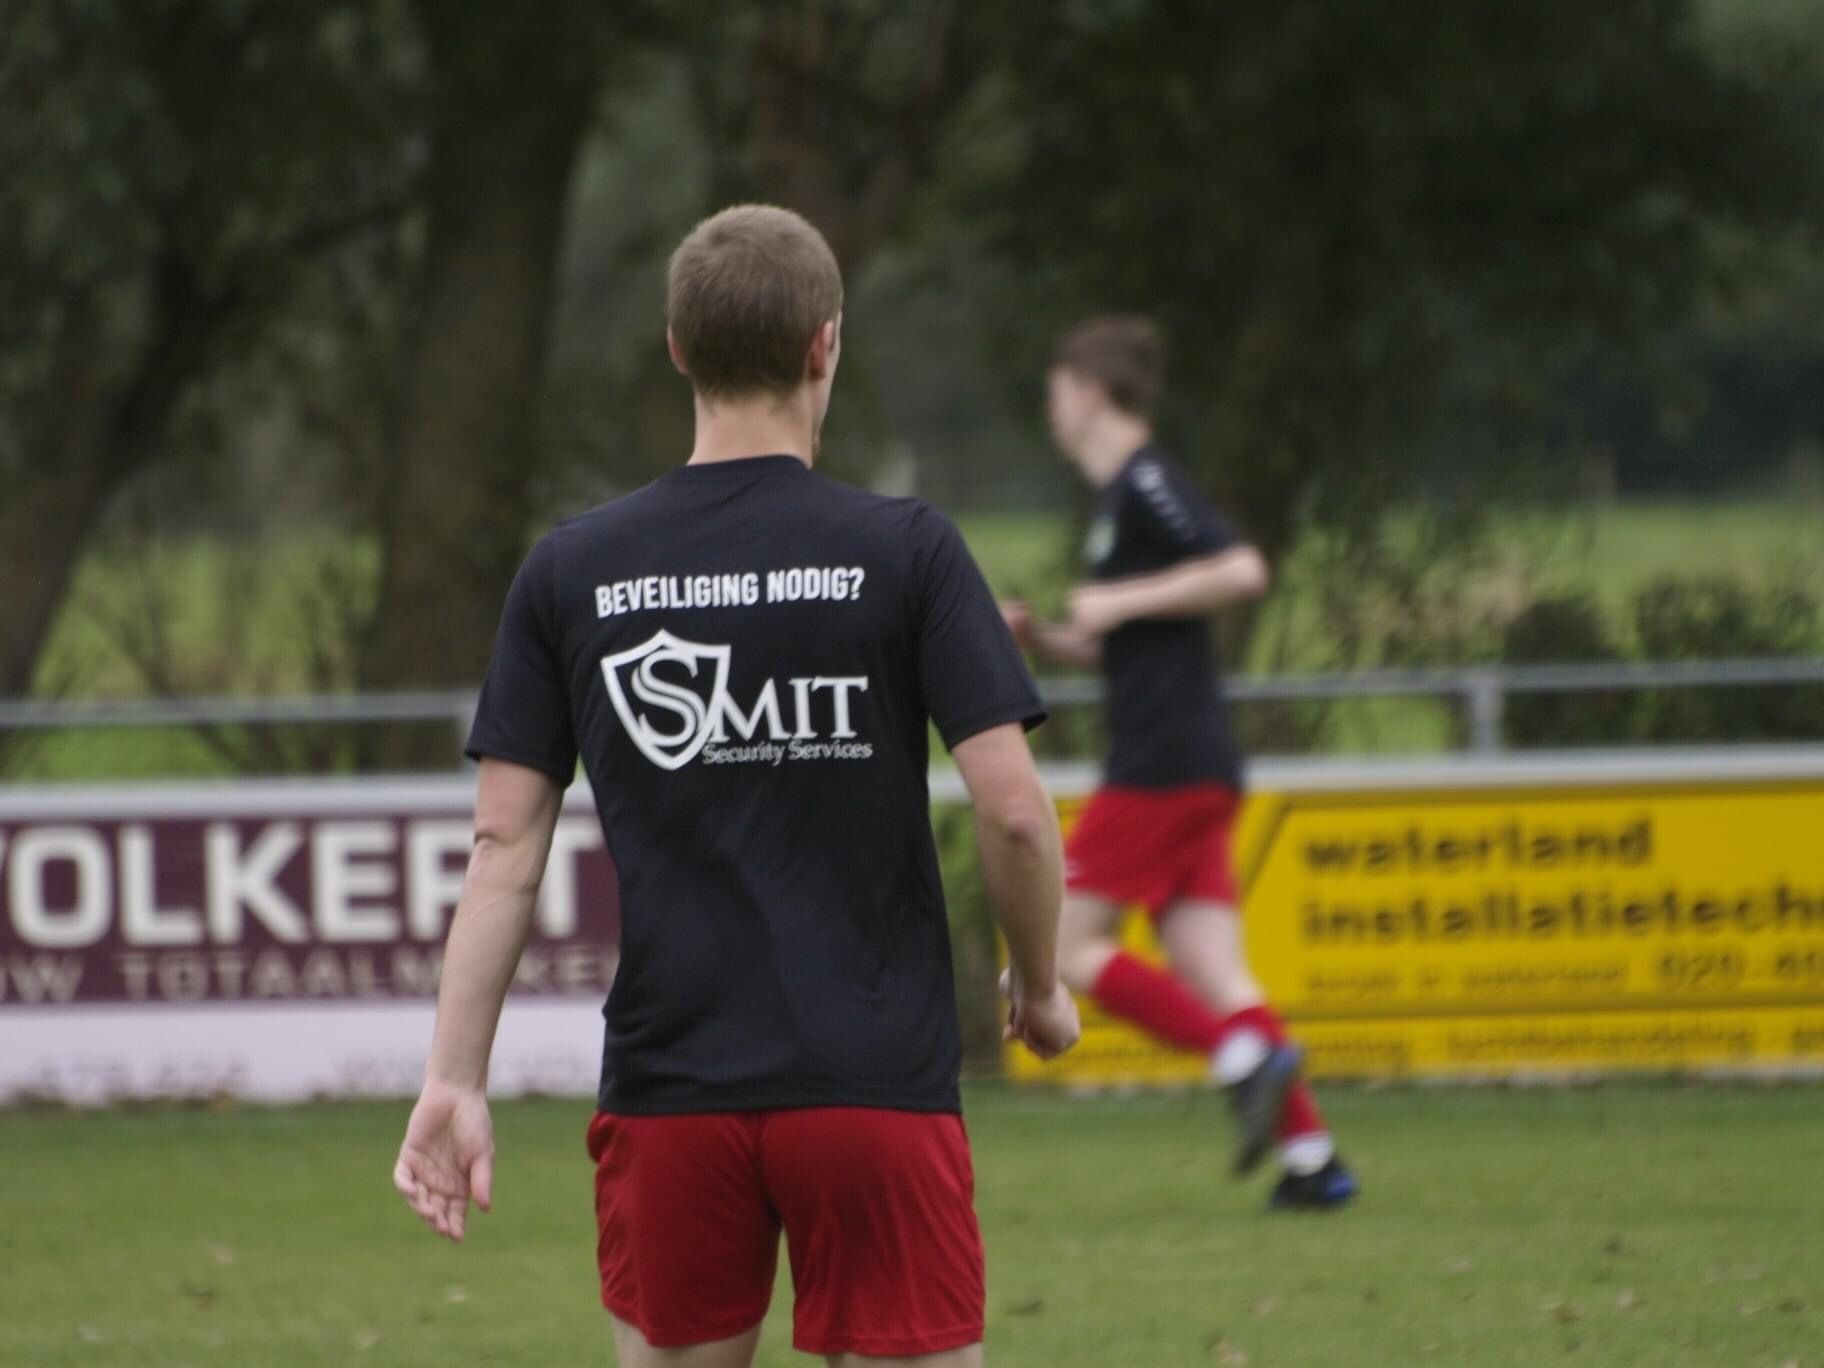 Voetbalspeler loopt en draagt logo met shirt van Smit Security Services